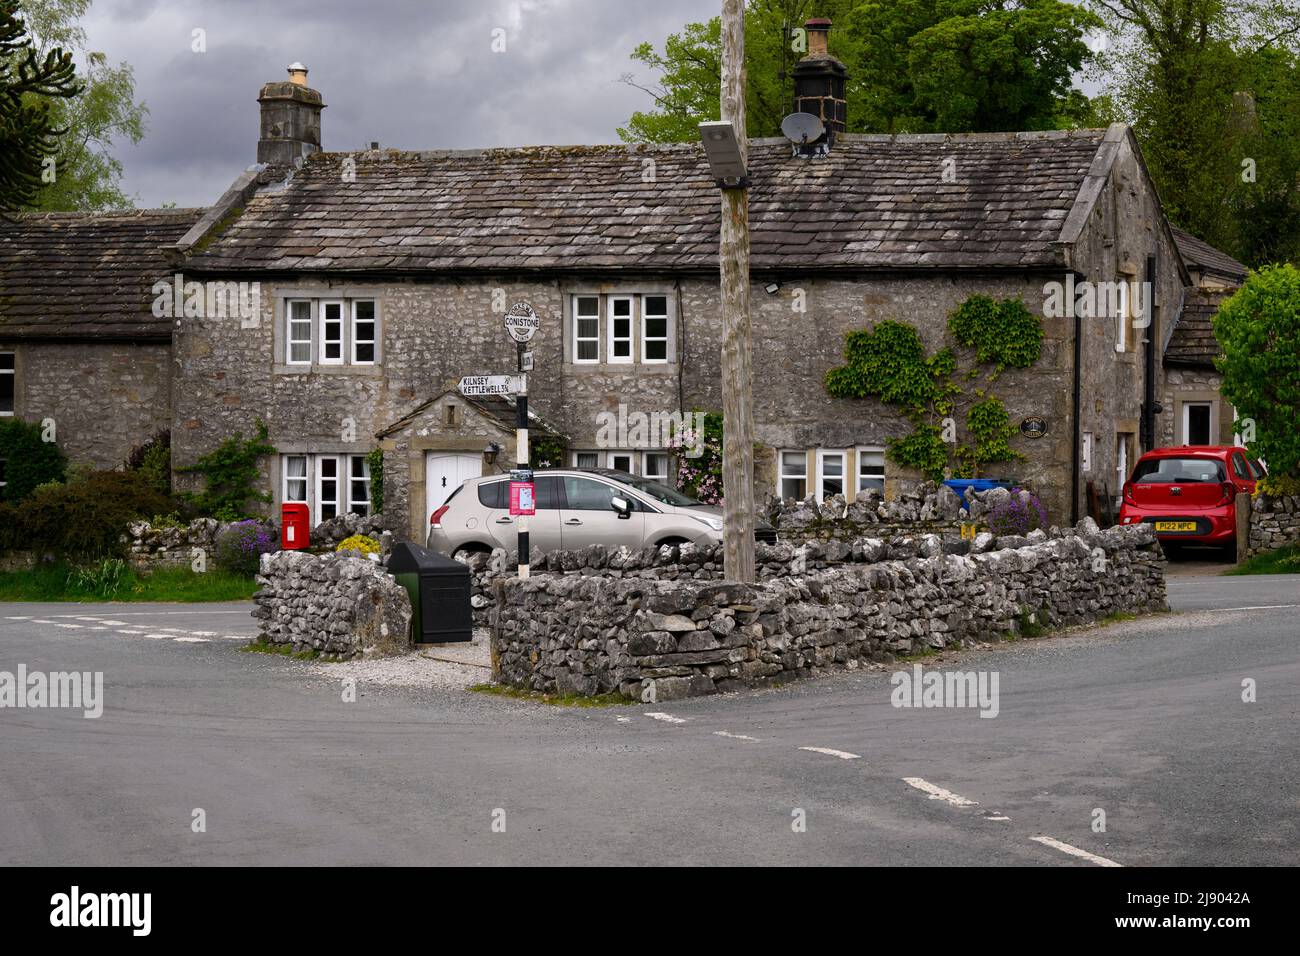 Calme Conistone village centre (belles propriétés en pierre de C18, jonction de route murée, signalisation) - Wharfedale, Yorkshire Dales, Angleterre, Royaume-Uni. Banque D'Images